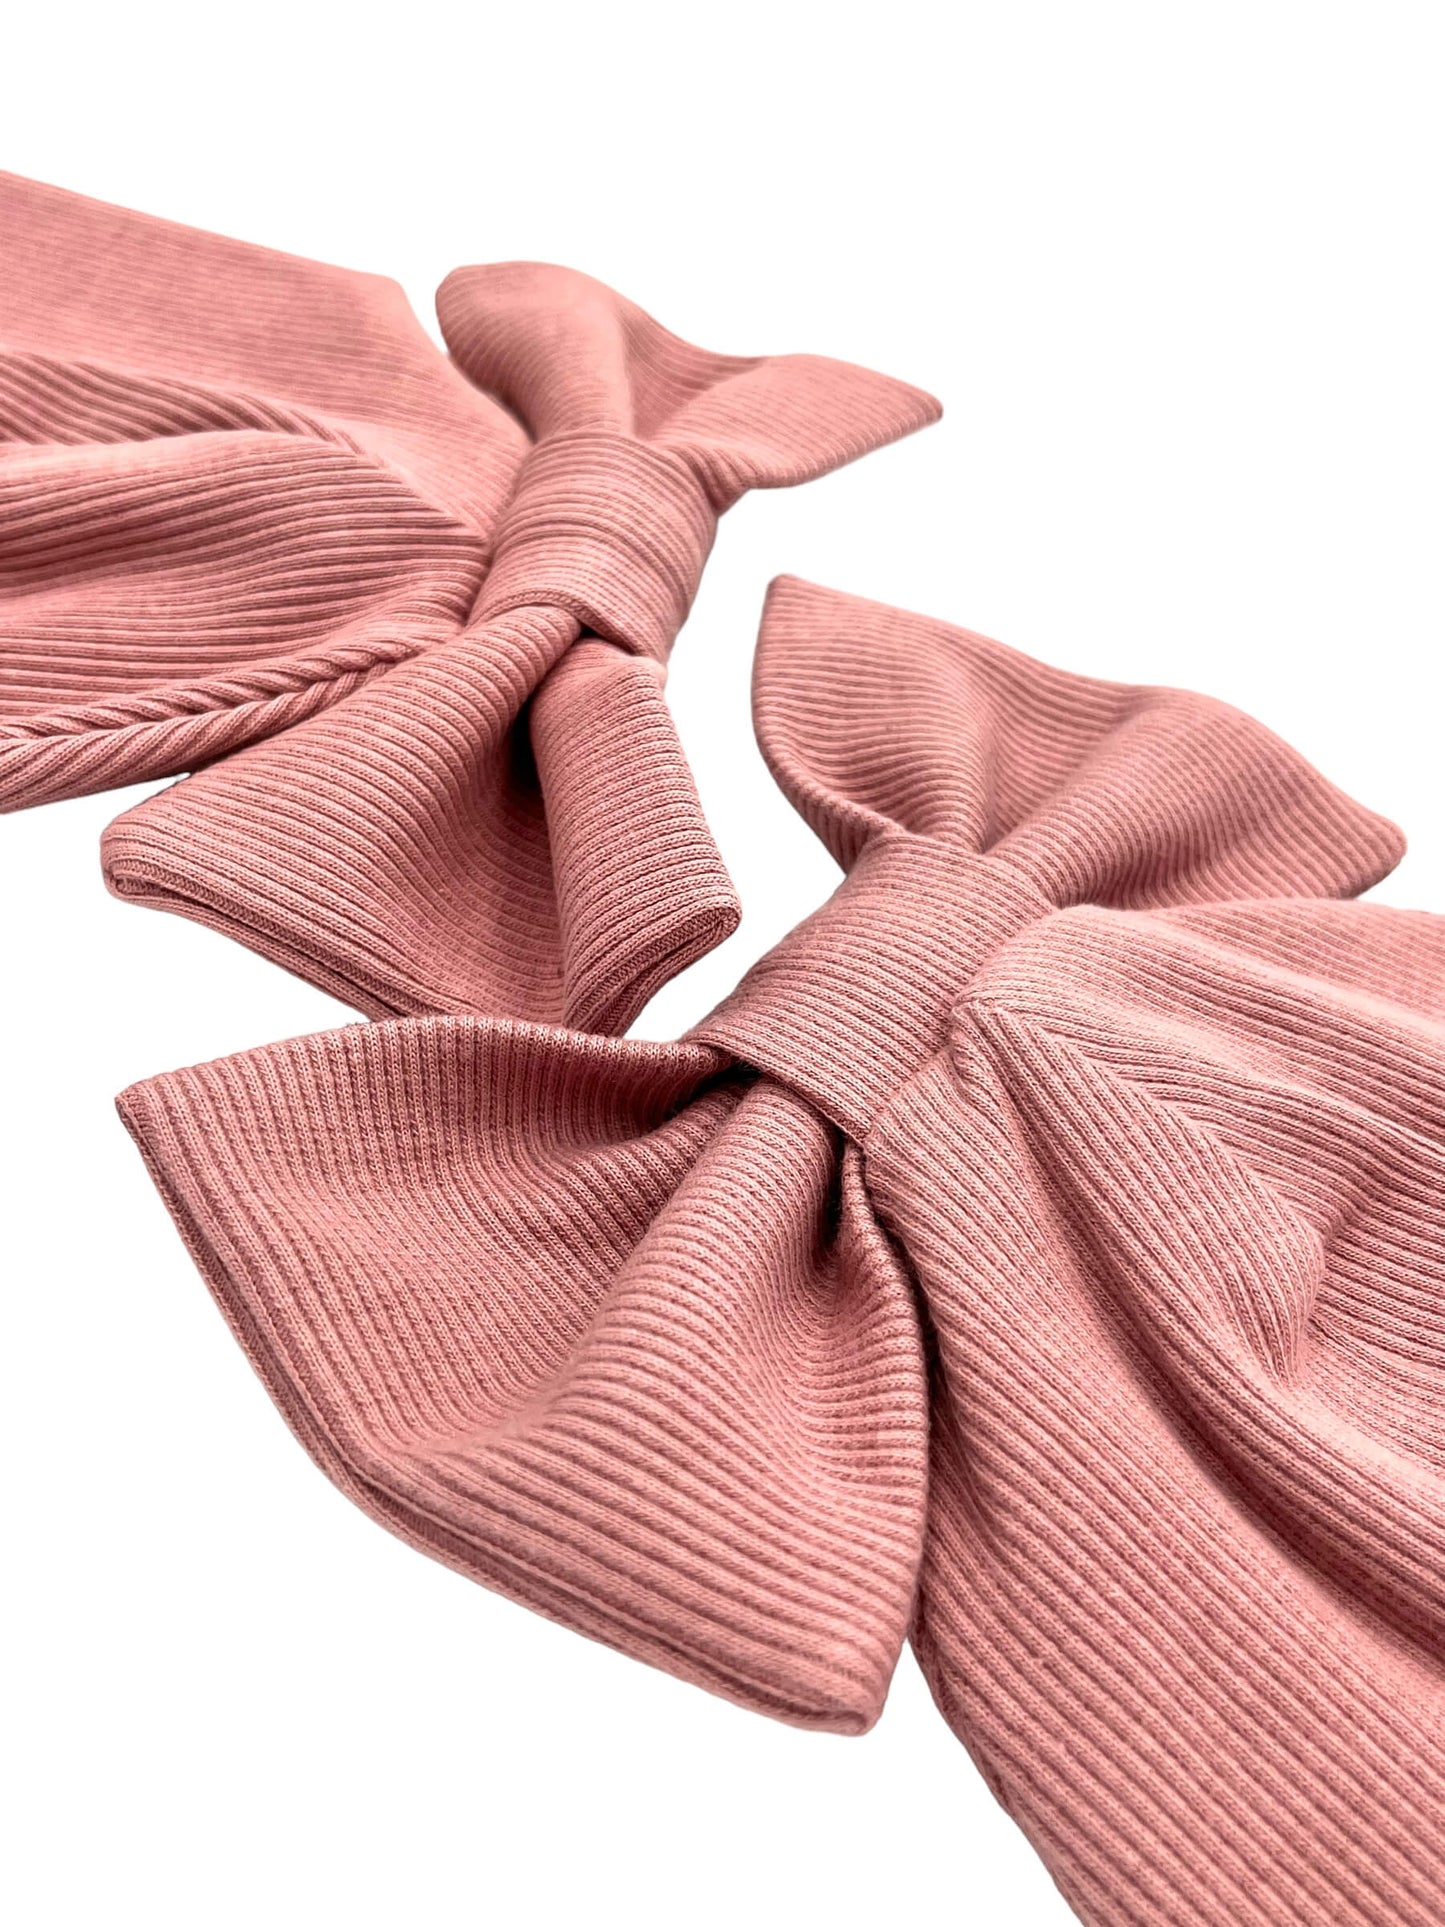 Pelenų rožinės spalvos RIB trikotažo kepurės ir šaliko/movos komplektai vaikams